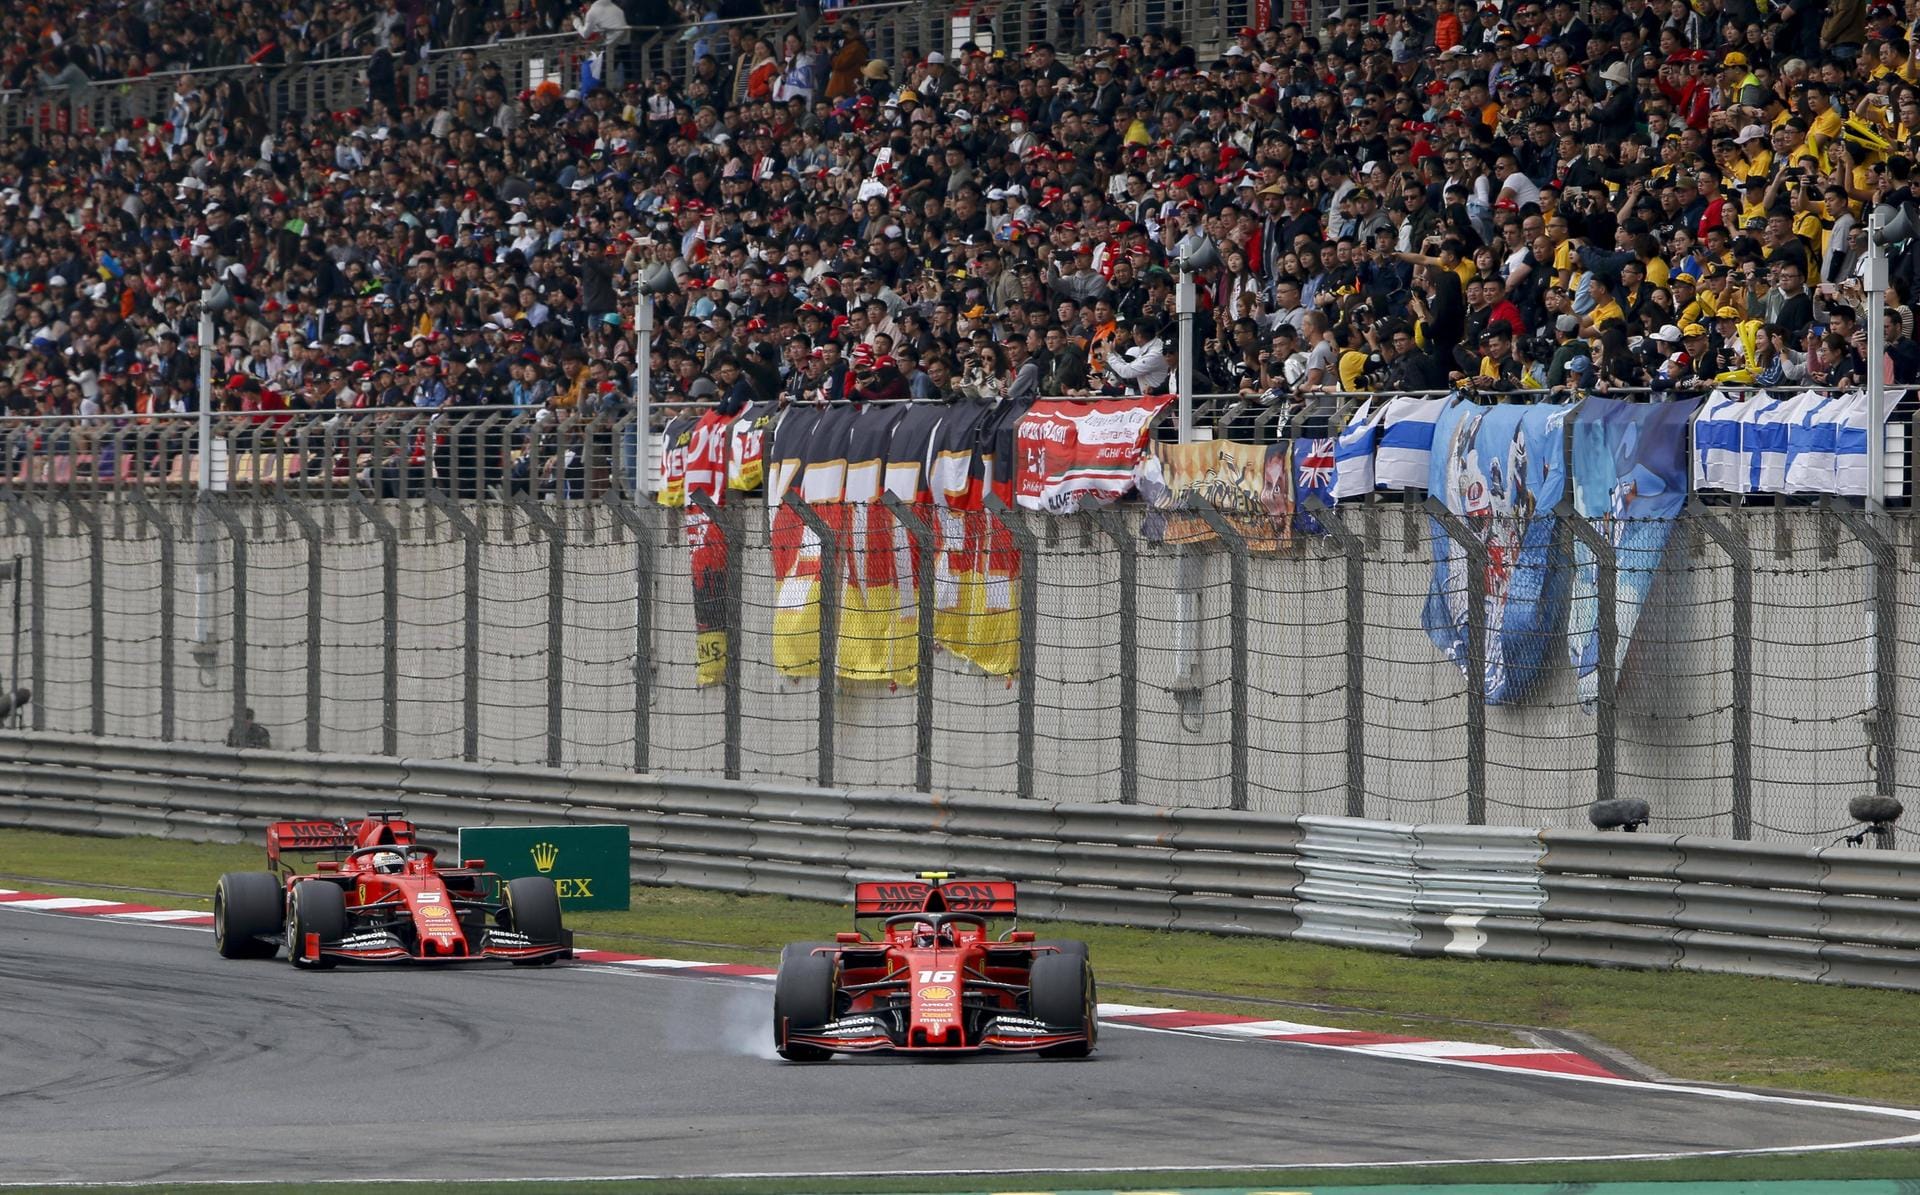 Großer Preis von China: Das Rennen in Shanghai beginnt für Vettel gleich mit einem Rückschlag – denn schon beim Start fällt er hinter Teamkollege Leclerc zurück. Die Scuderia schenkt dem viermaligen Weltmeister dank Stallorder (und einem verpatzten Leclerc-Boxenstopp) dann doch noch Platz drei.